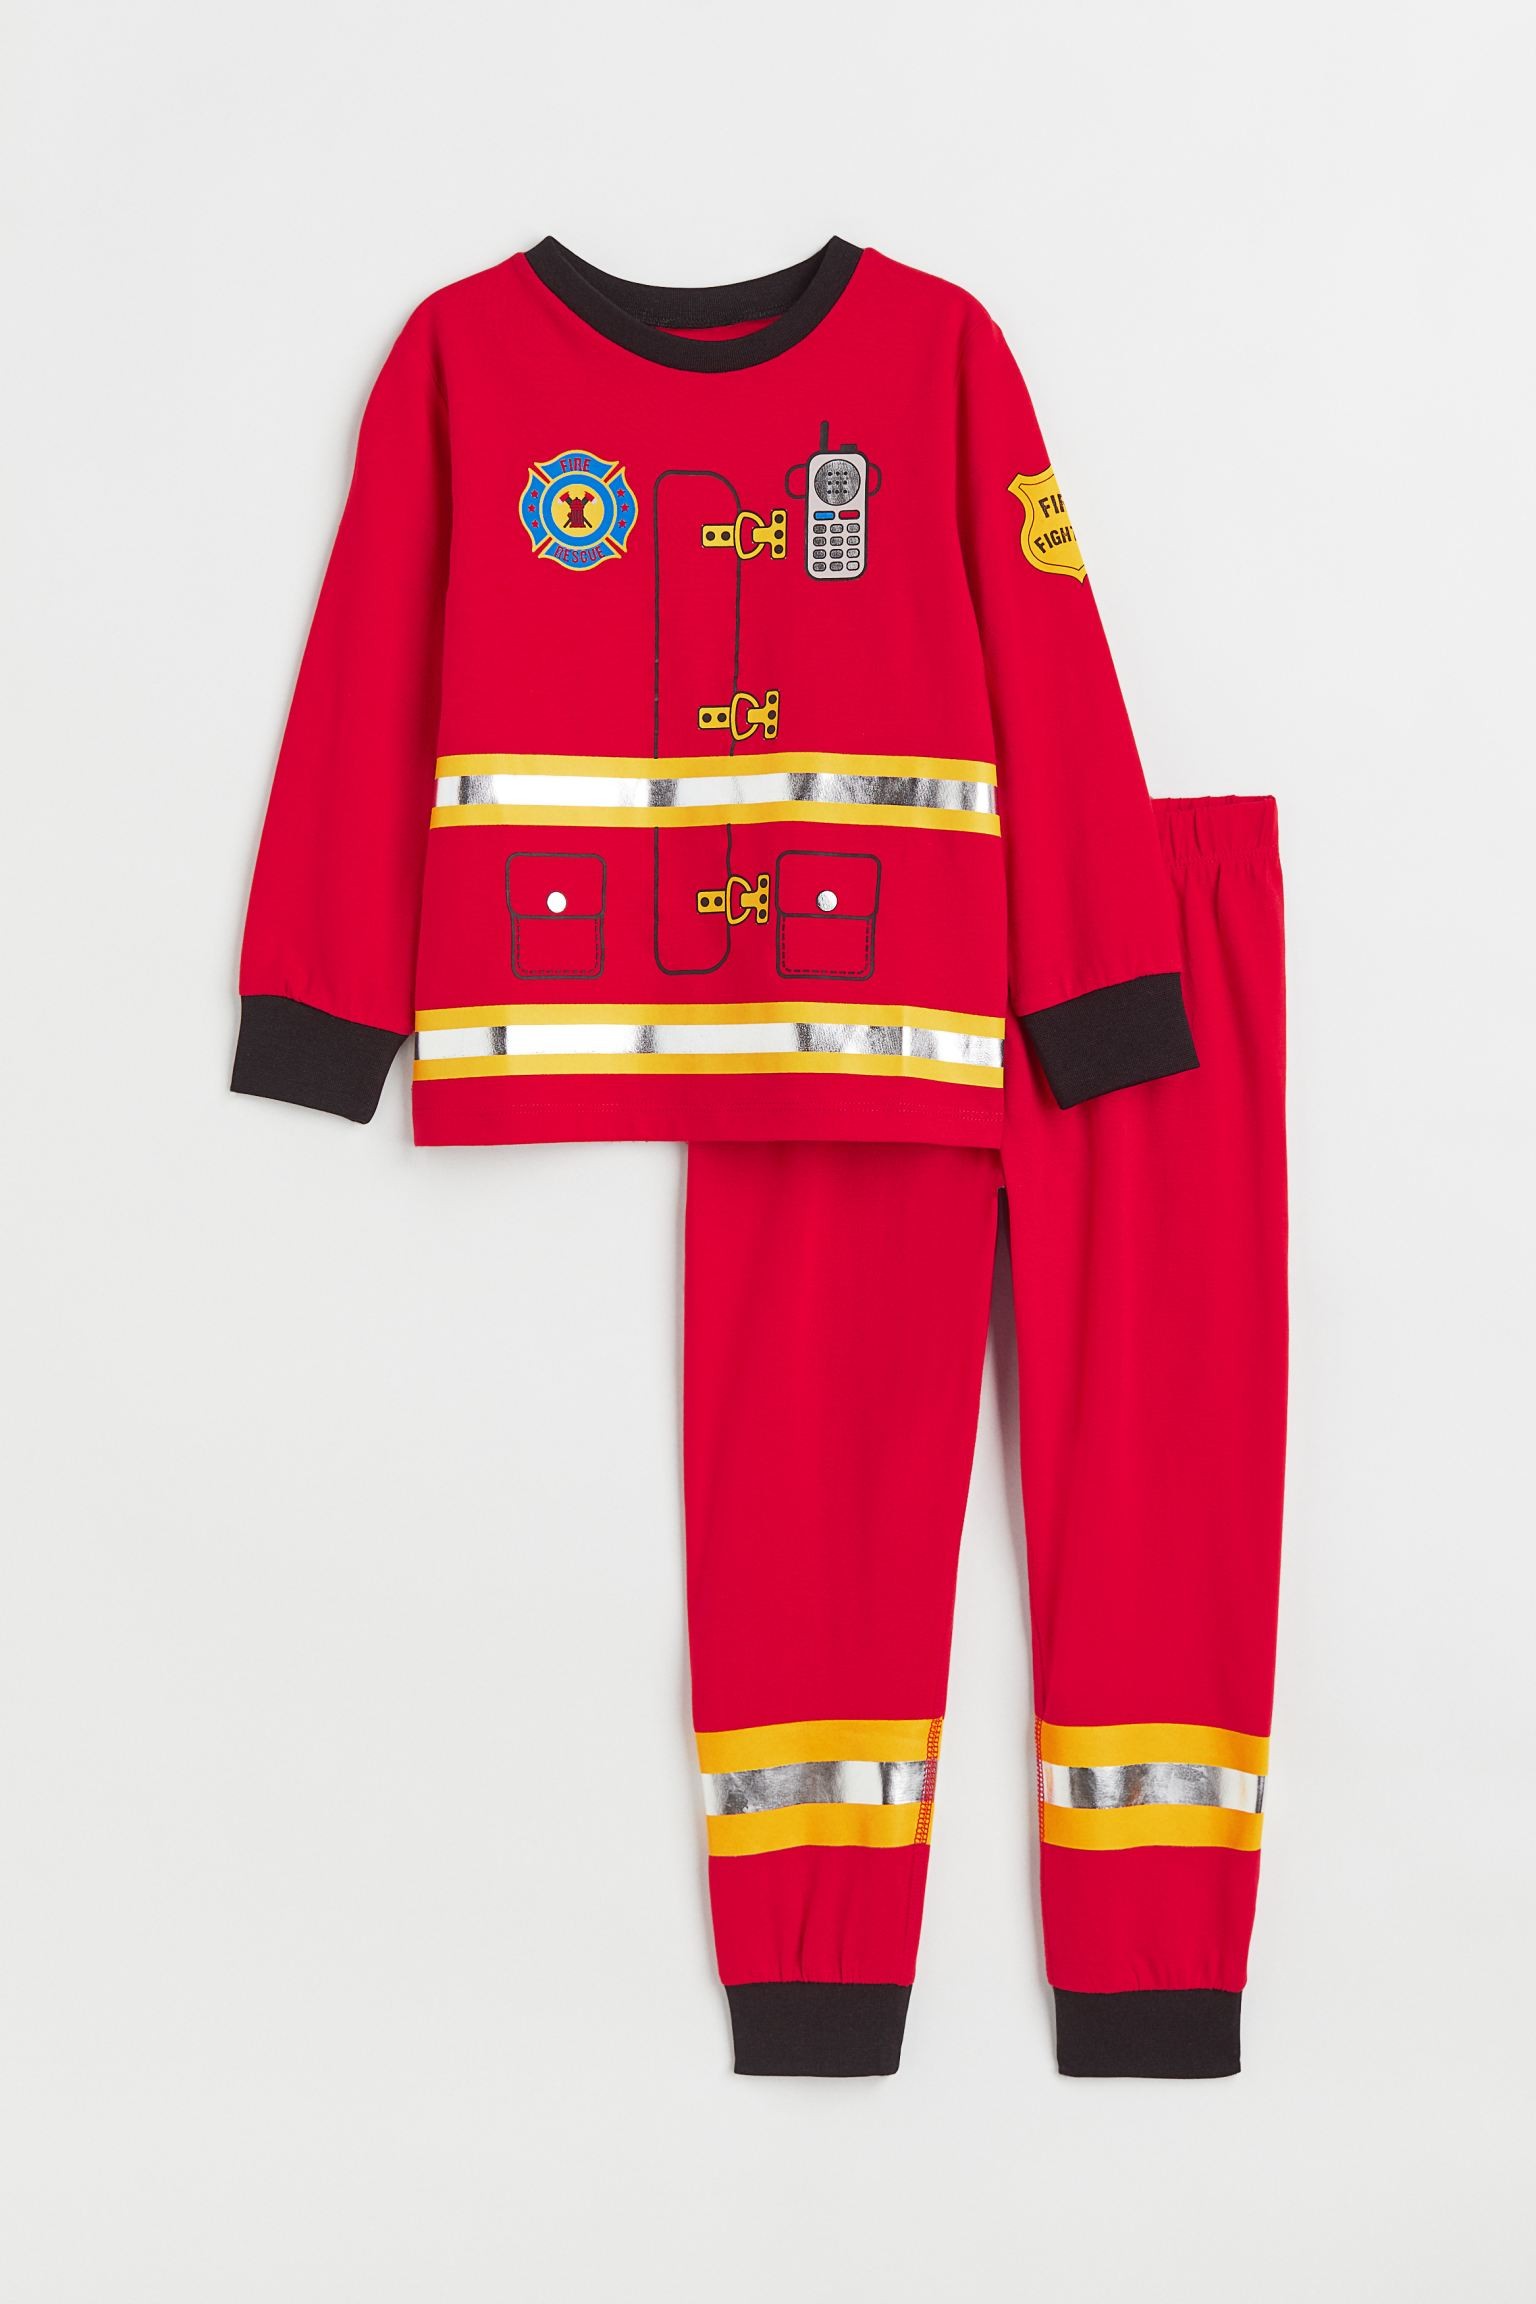 H&M Home Трикотажная пижама, Красный/Пожарный, Разные размеры 0485548021 | 0485548021